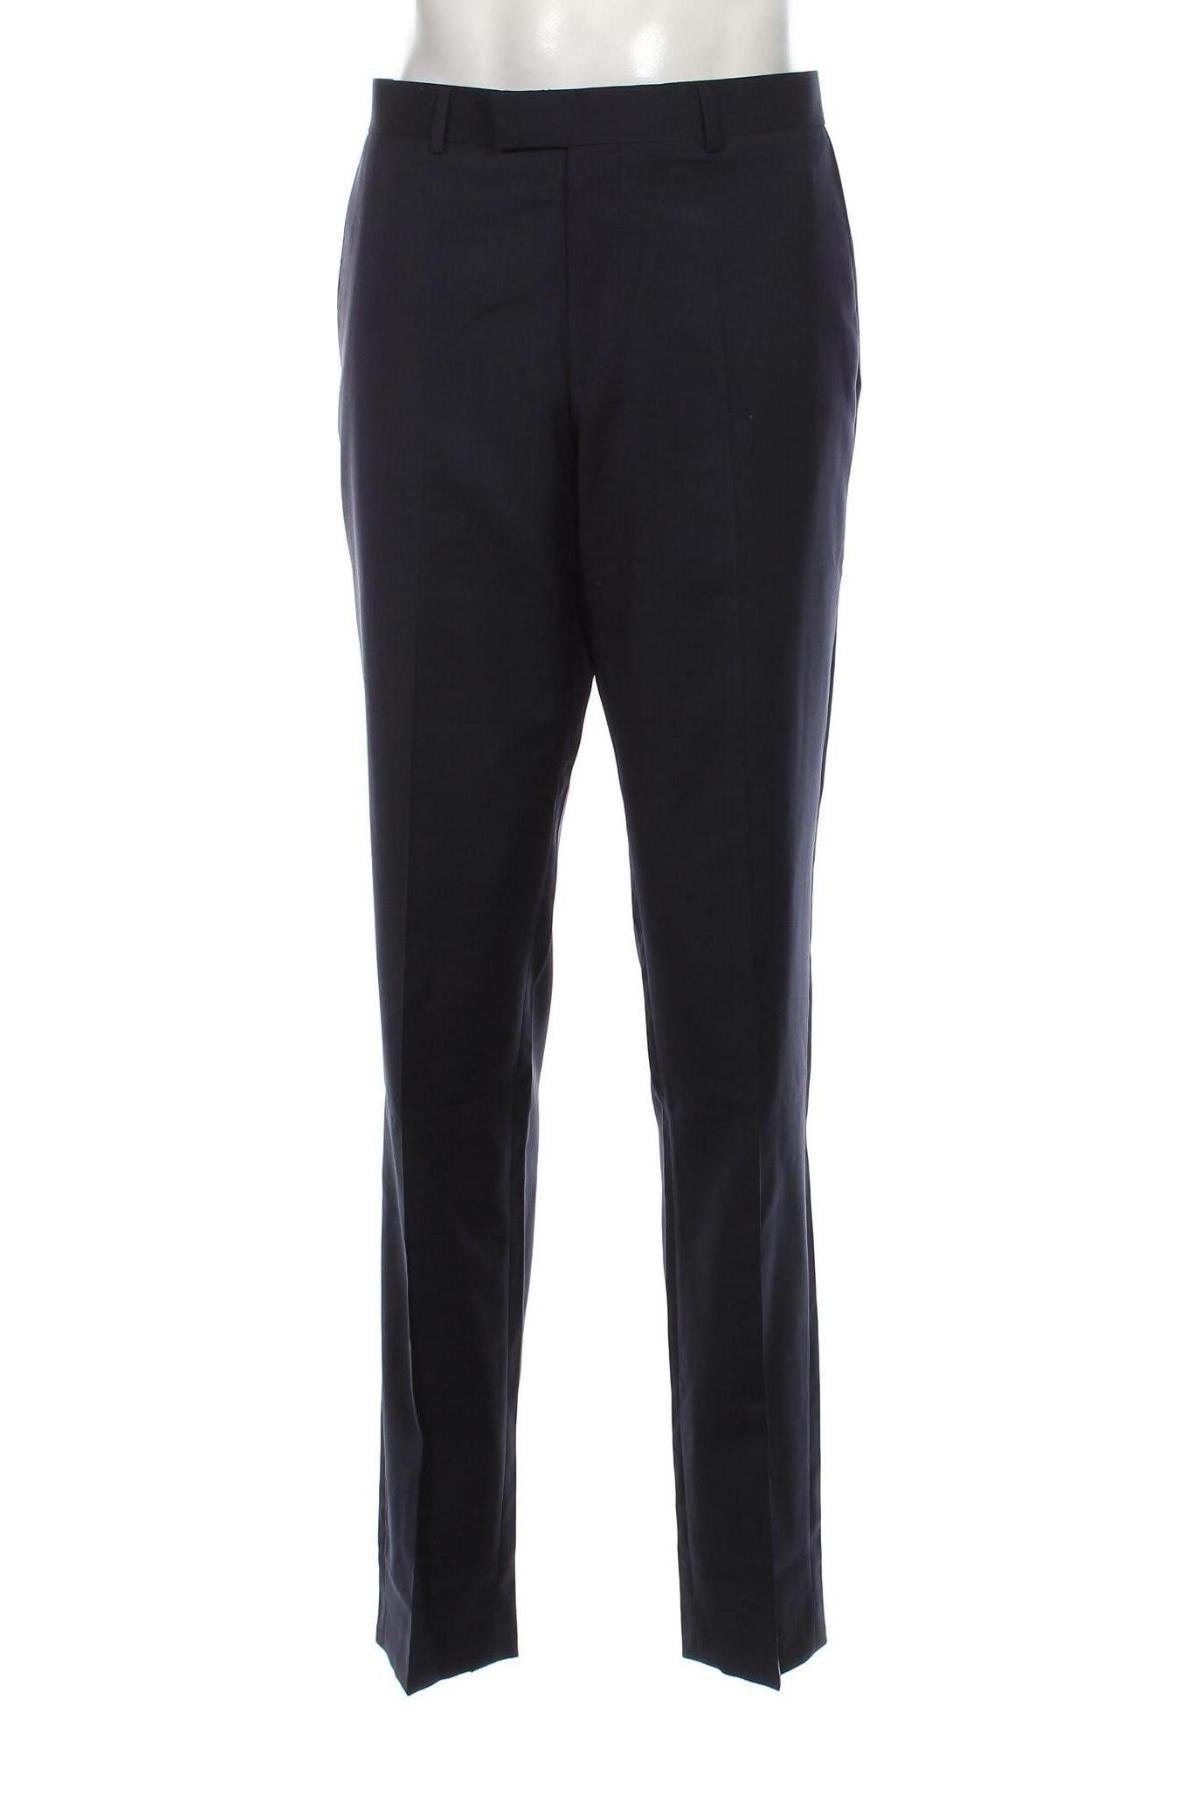 Pantaloni de bărbați S.Oliver Black Label, Mărime L, Culoare Albastru, Preț 434,21 Lei